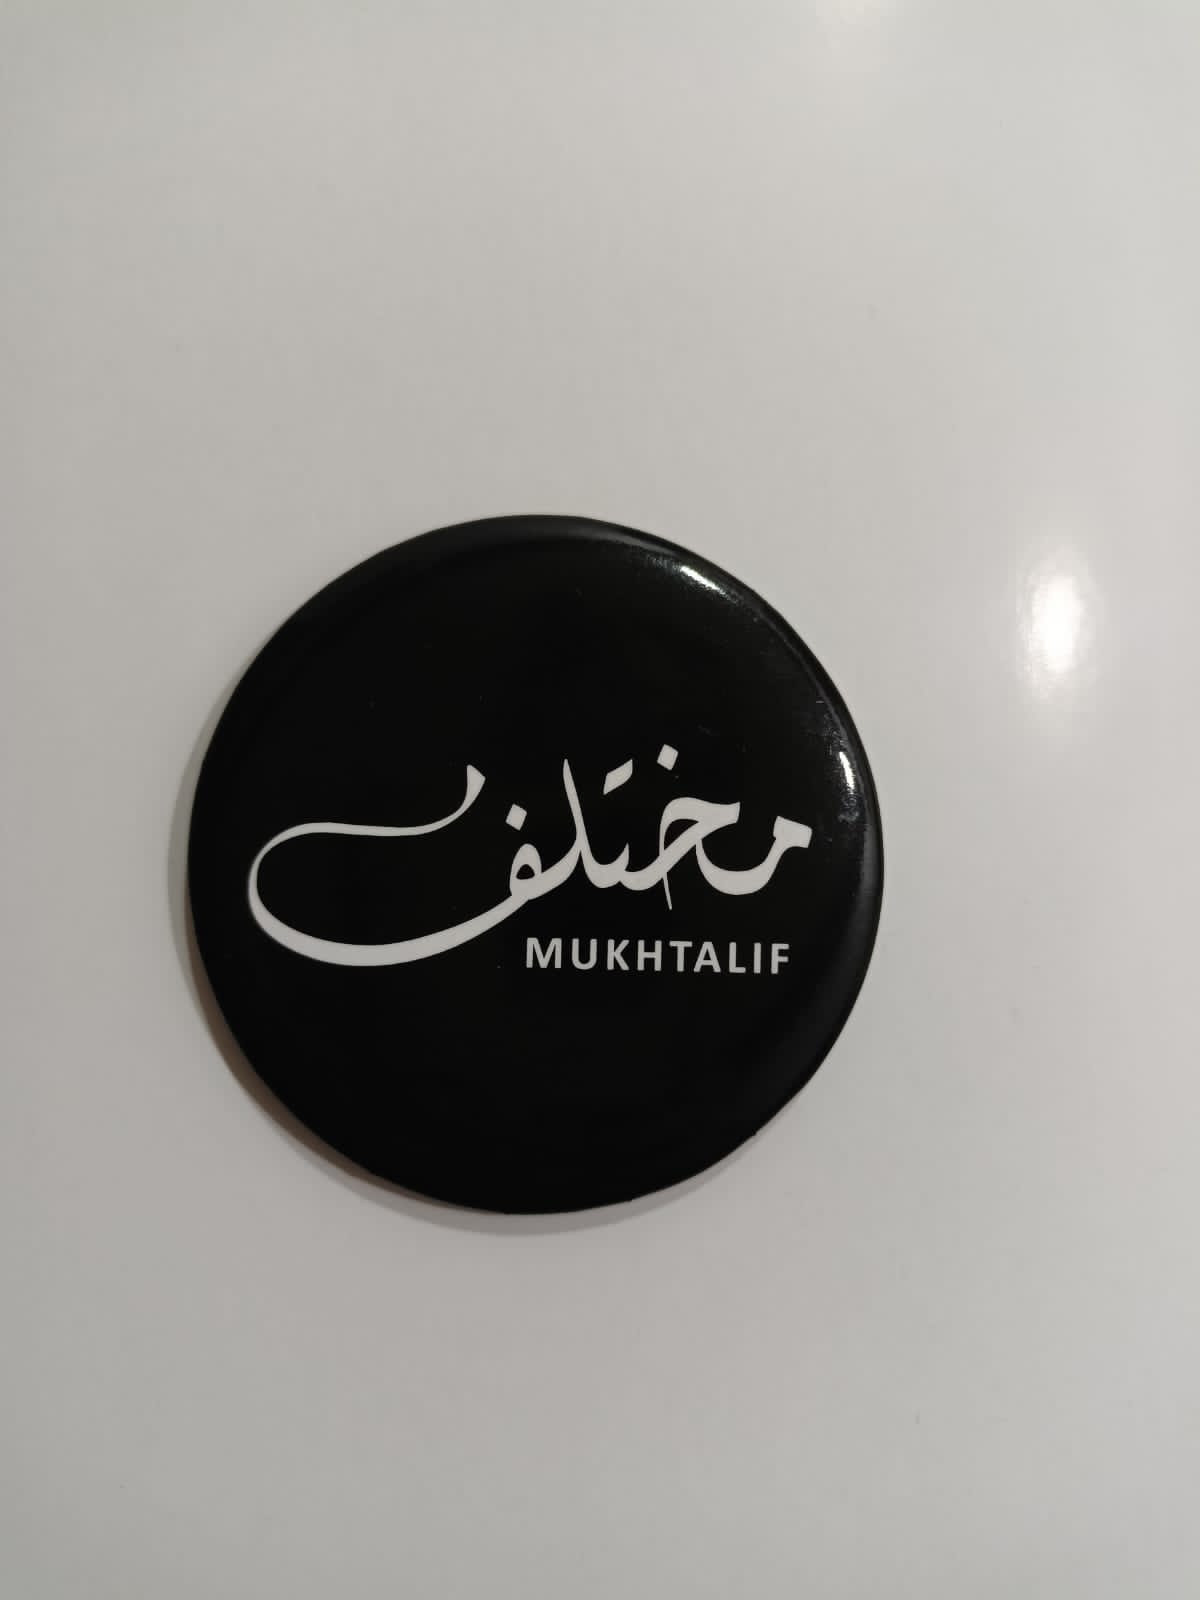 Mukhtalif